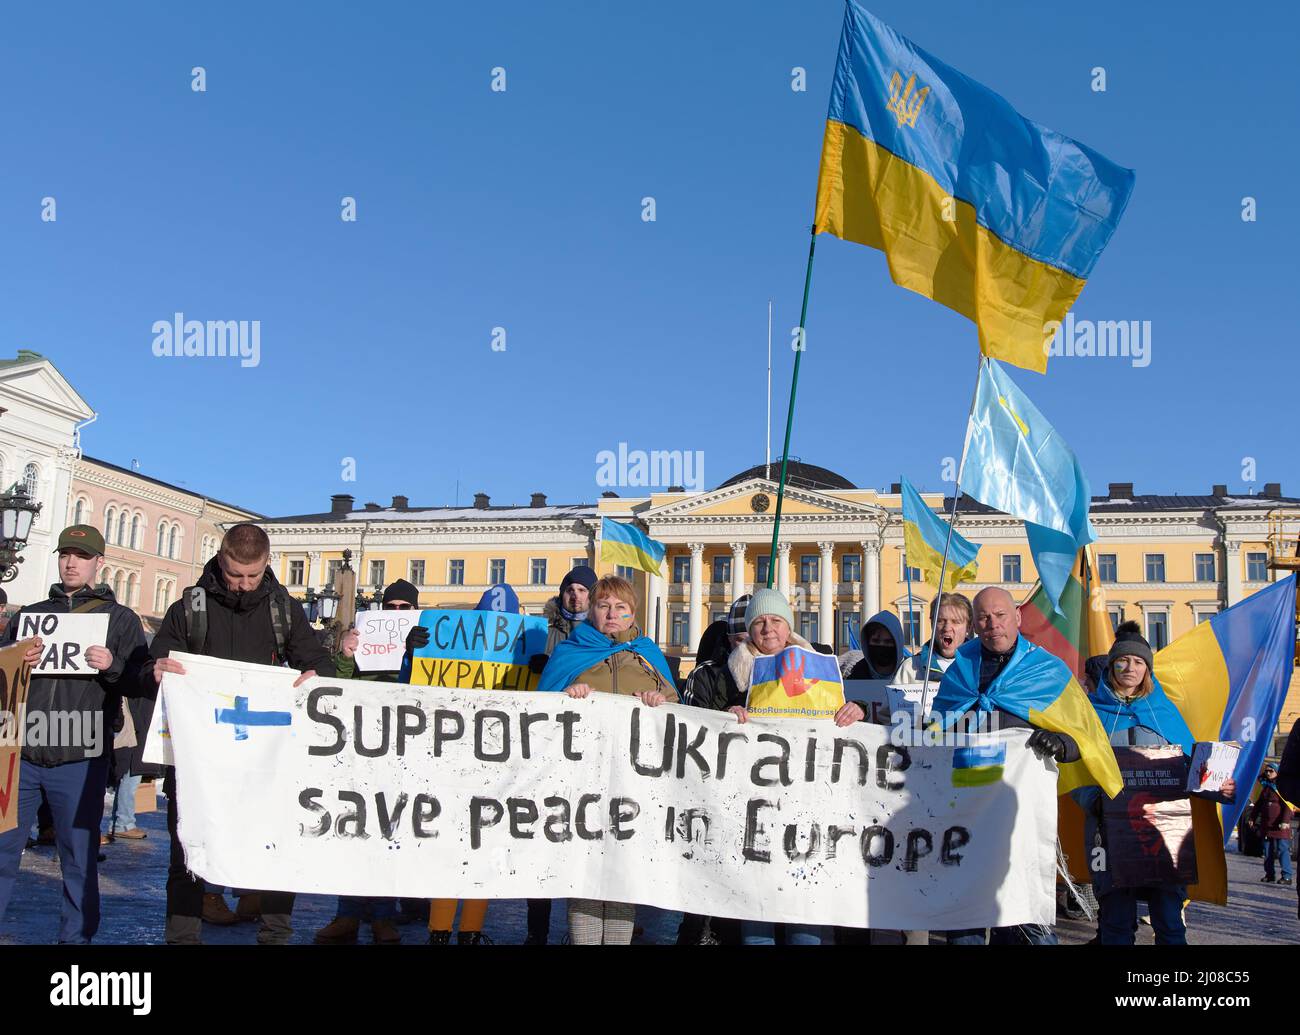 Helsinki, Finnland - 26. Februar 2022: Demonstranten bei einer Kundgebung gegen Russlands militärische Aggression und Besetzung der Ukraine mit Unterstützung Ukrain Stockfoto